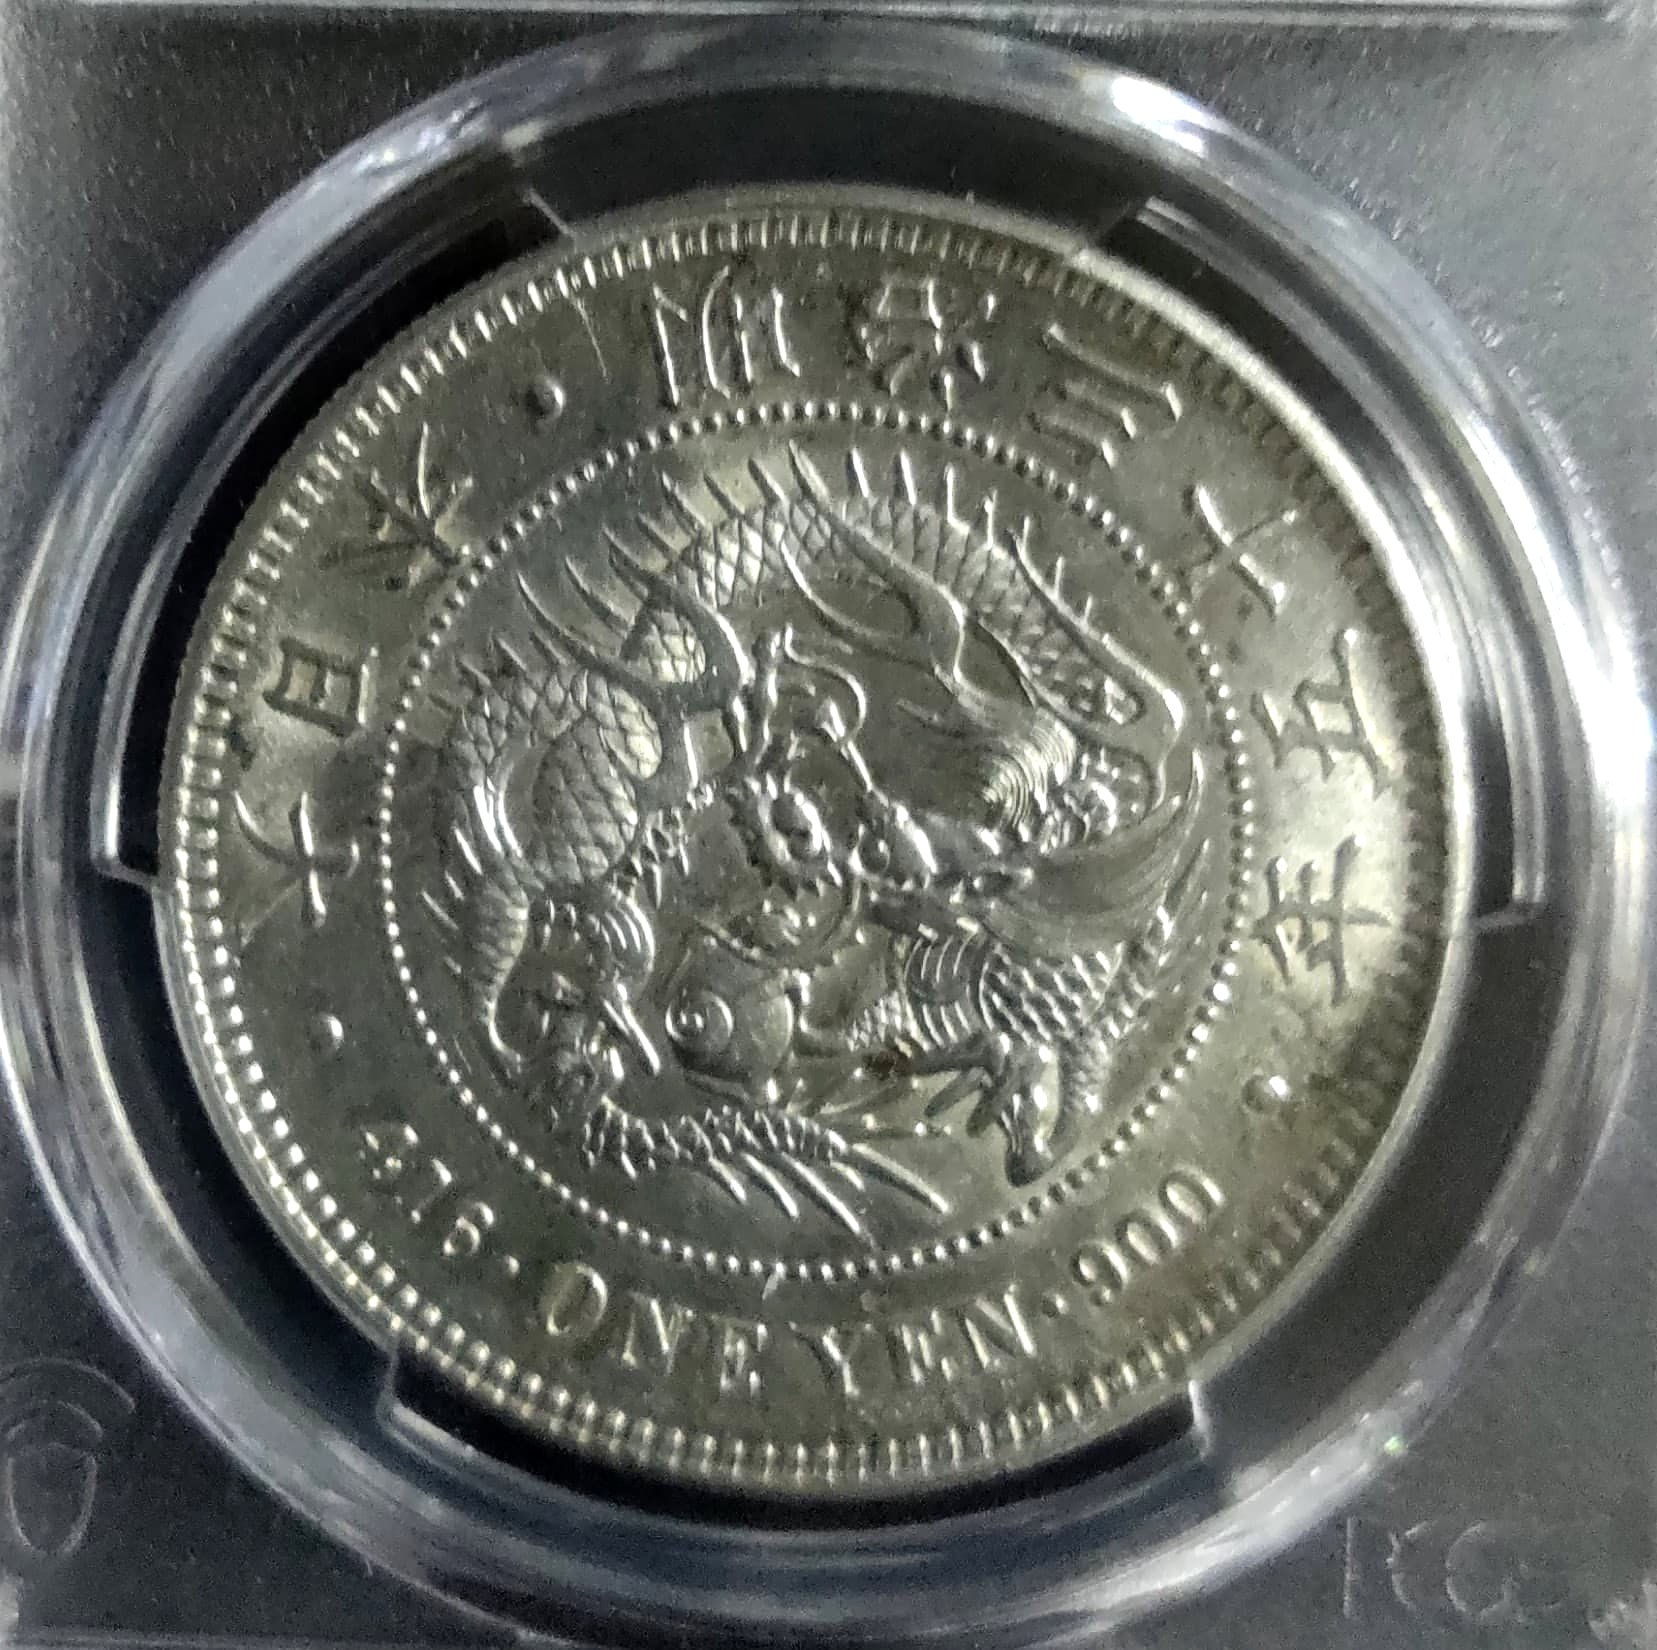 旧1円銀貨　一圓銀貨　明治三年　PCGS MS64　未使用 銀貨　古銭　本物保証